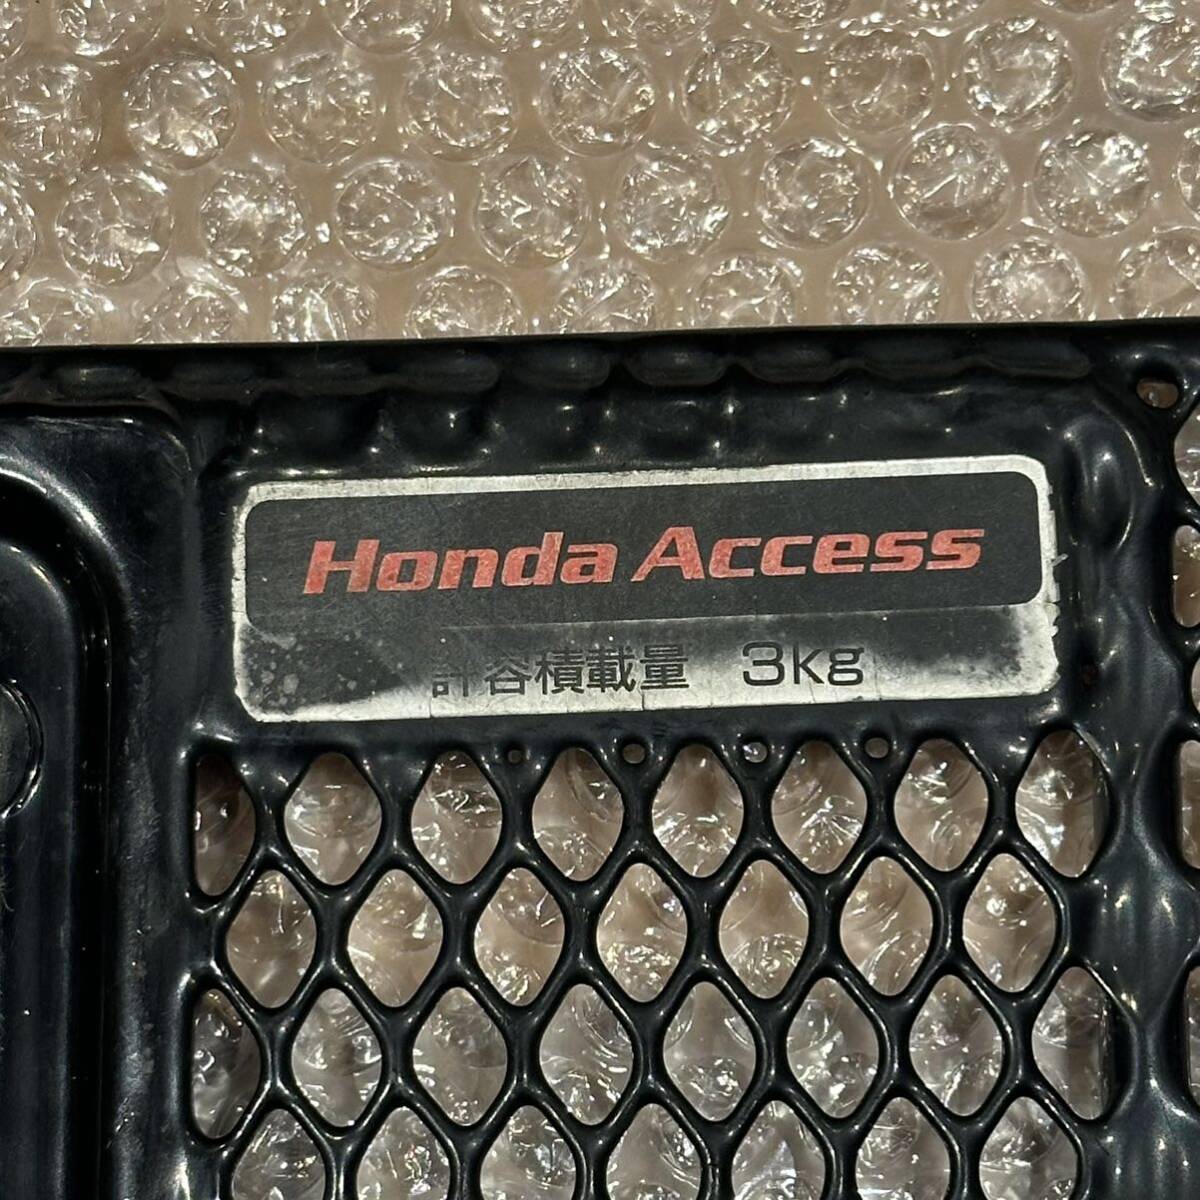  бесплатная доставка по всей стране! Honda такт AF51 оригинальный корзина передняя корзина багаж inserting покупки и т.п. 